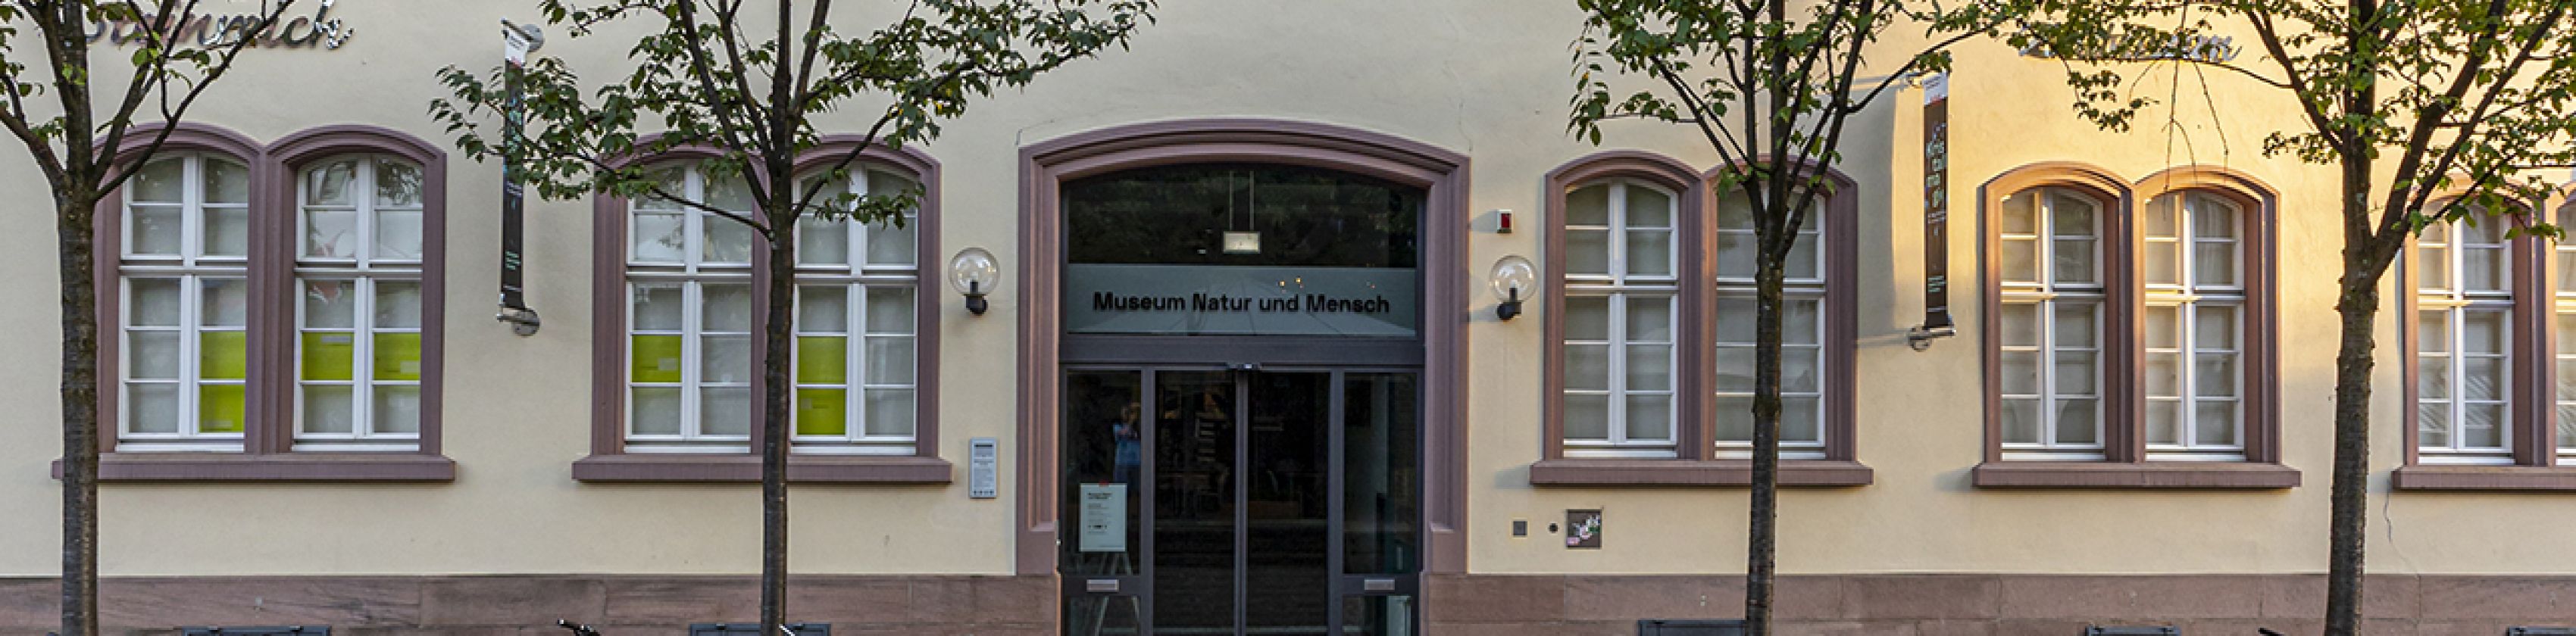 Museum-Natur-Außenansicht-Mensch-FWTM-Spiegelhalter.3, © FWTM-Spiegelhalter